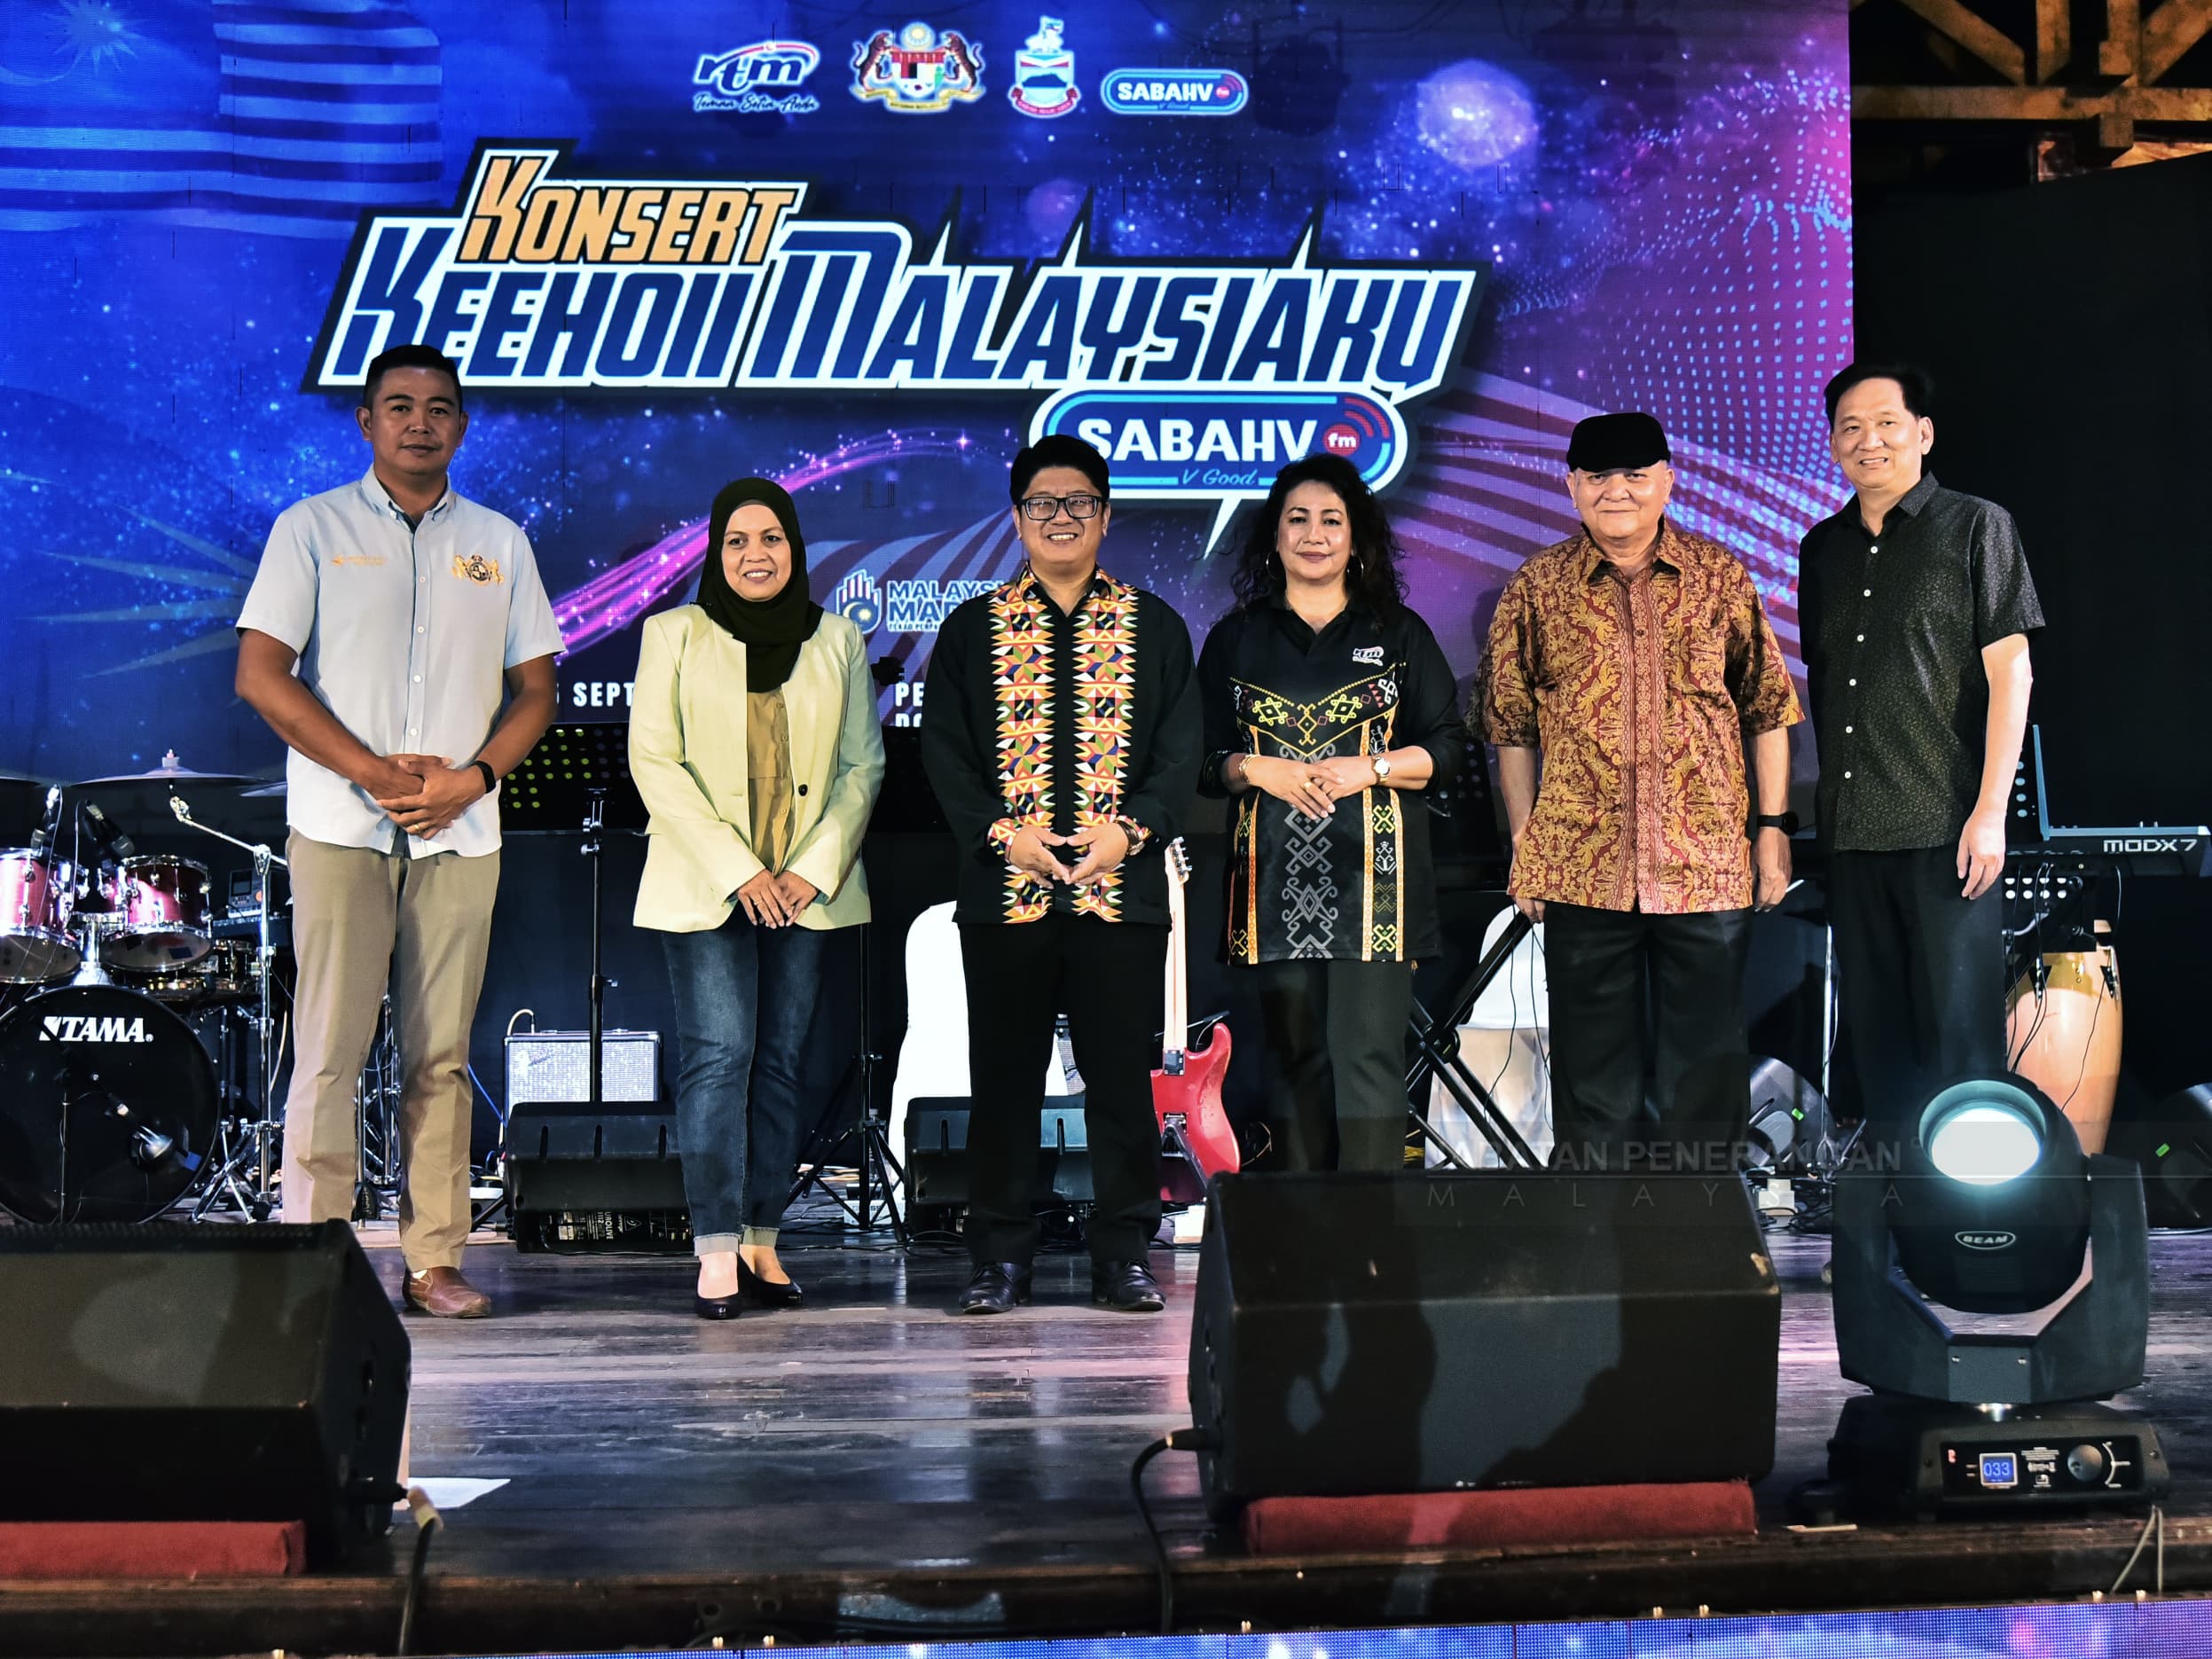 Keehoi MalaysiaKu concert celebrates nation’s diversity